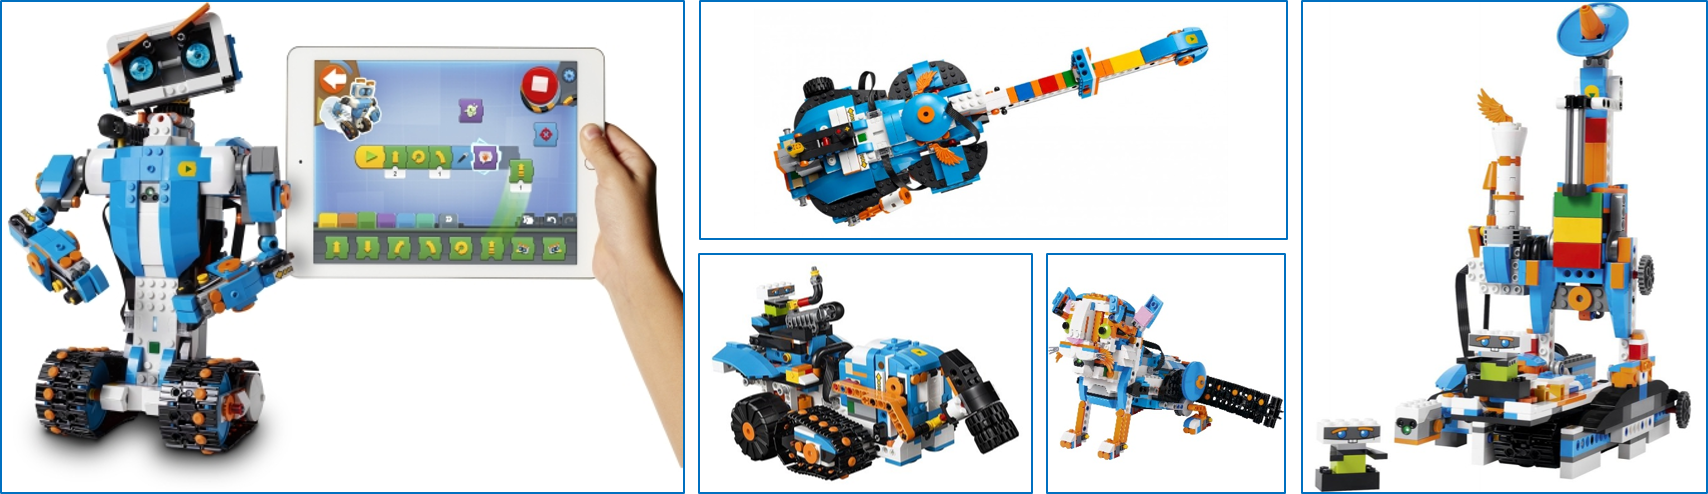 Warsztaty LEGO Robotycy i programiści